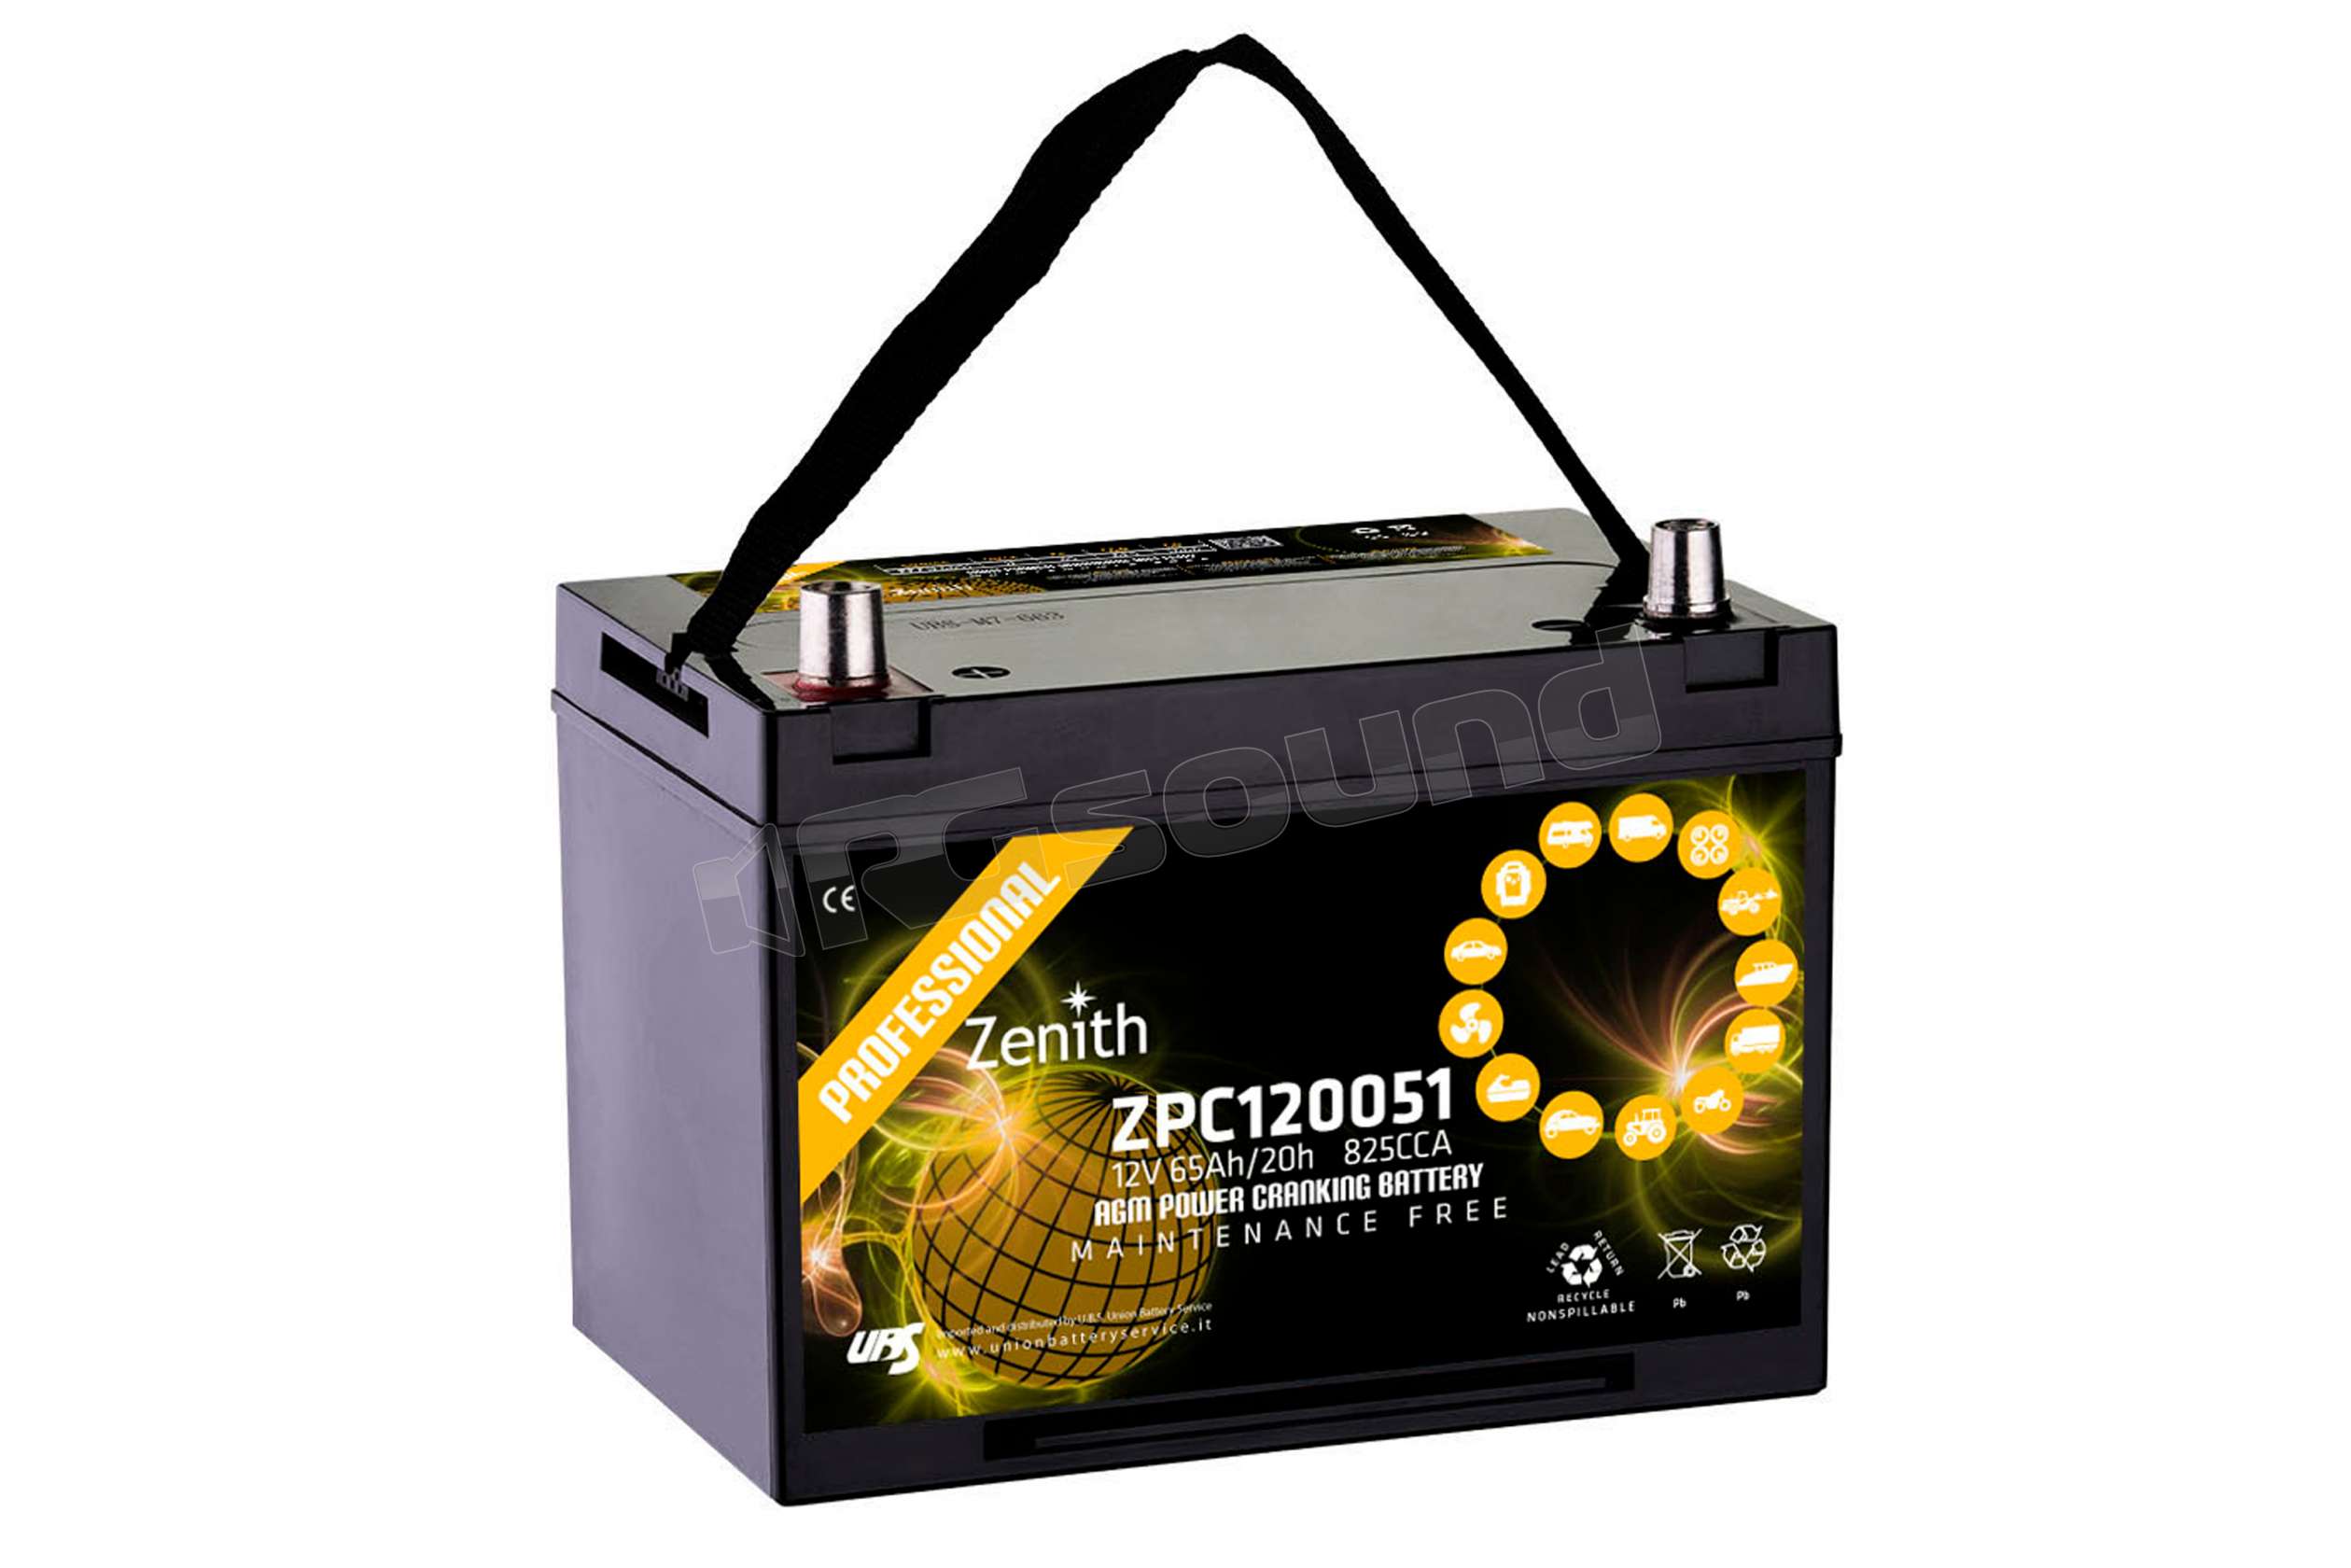 Batterie per camper : MORSETTI BATTERIA STANDARD